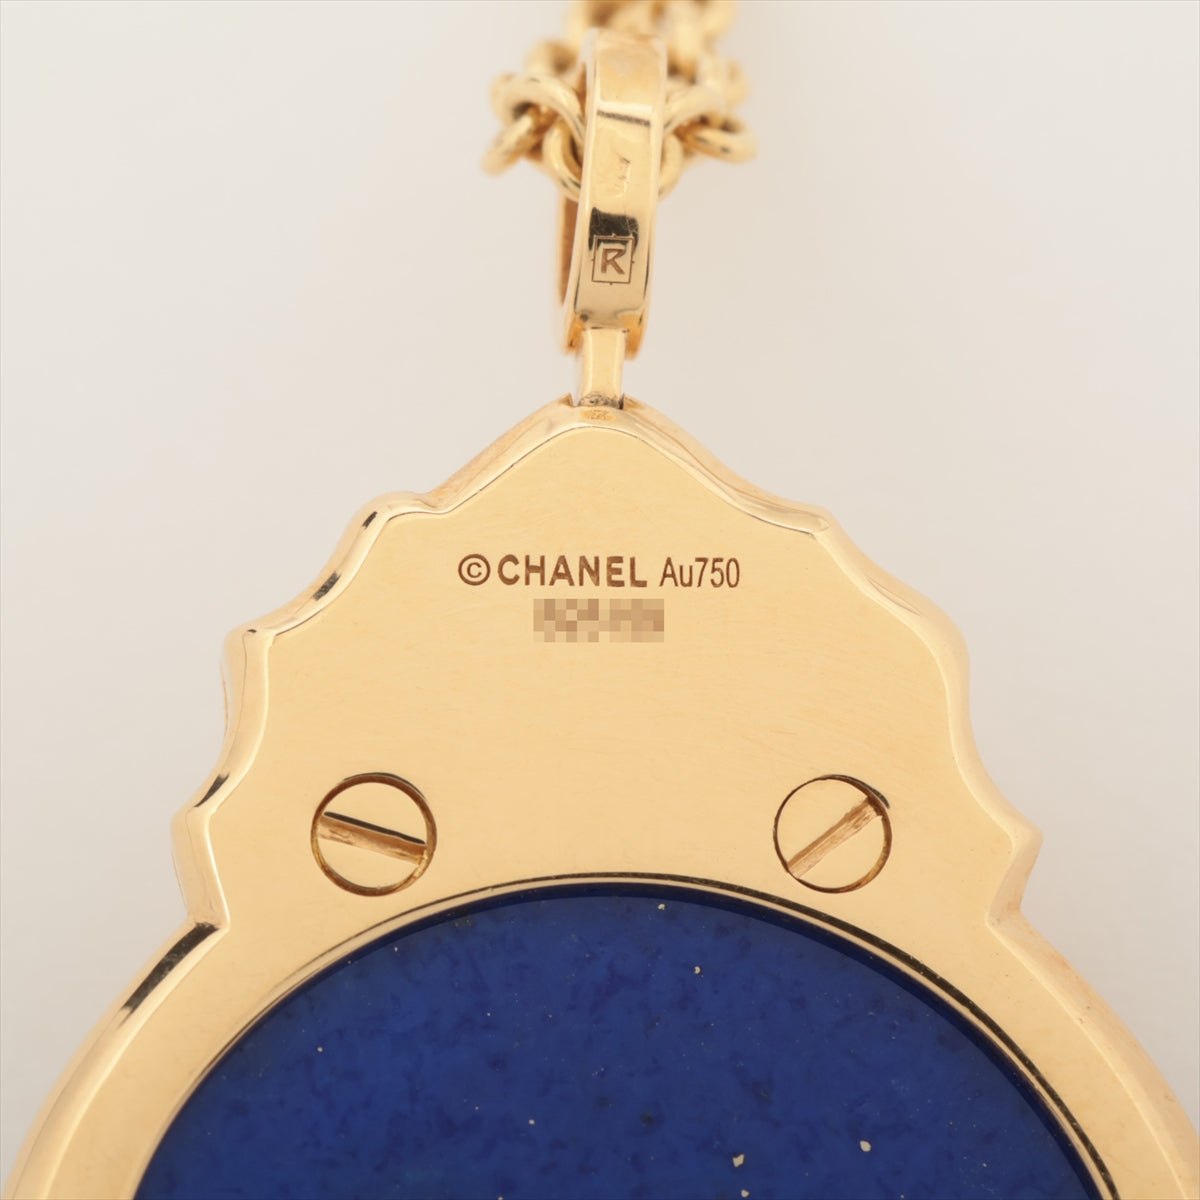 Chanel Sur Chignes Du Rion Lapis lazuli Diamond Necklace 750(YG) 13.1g